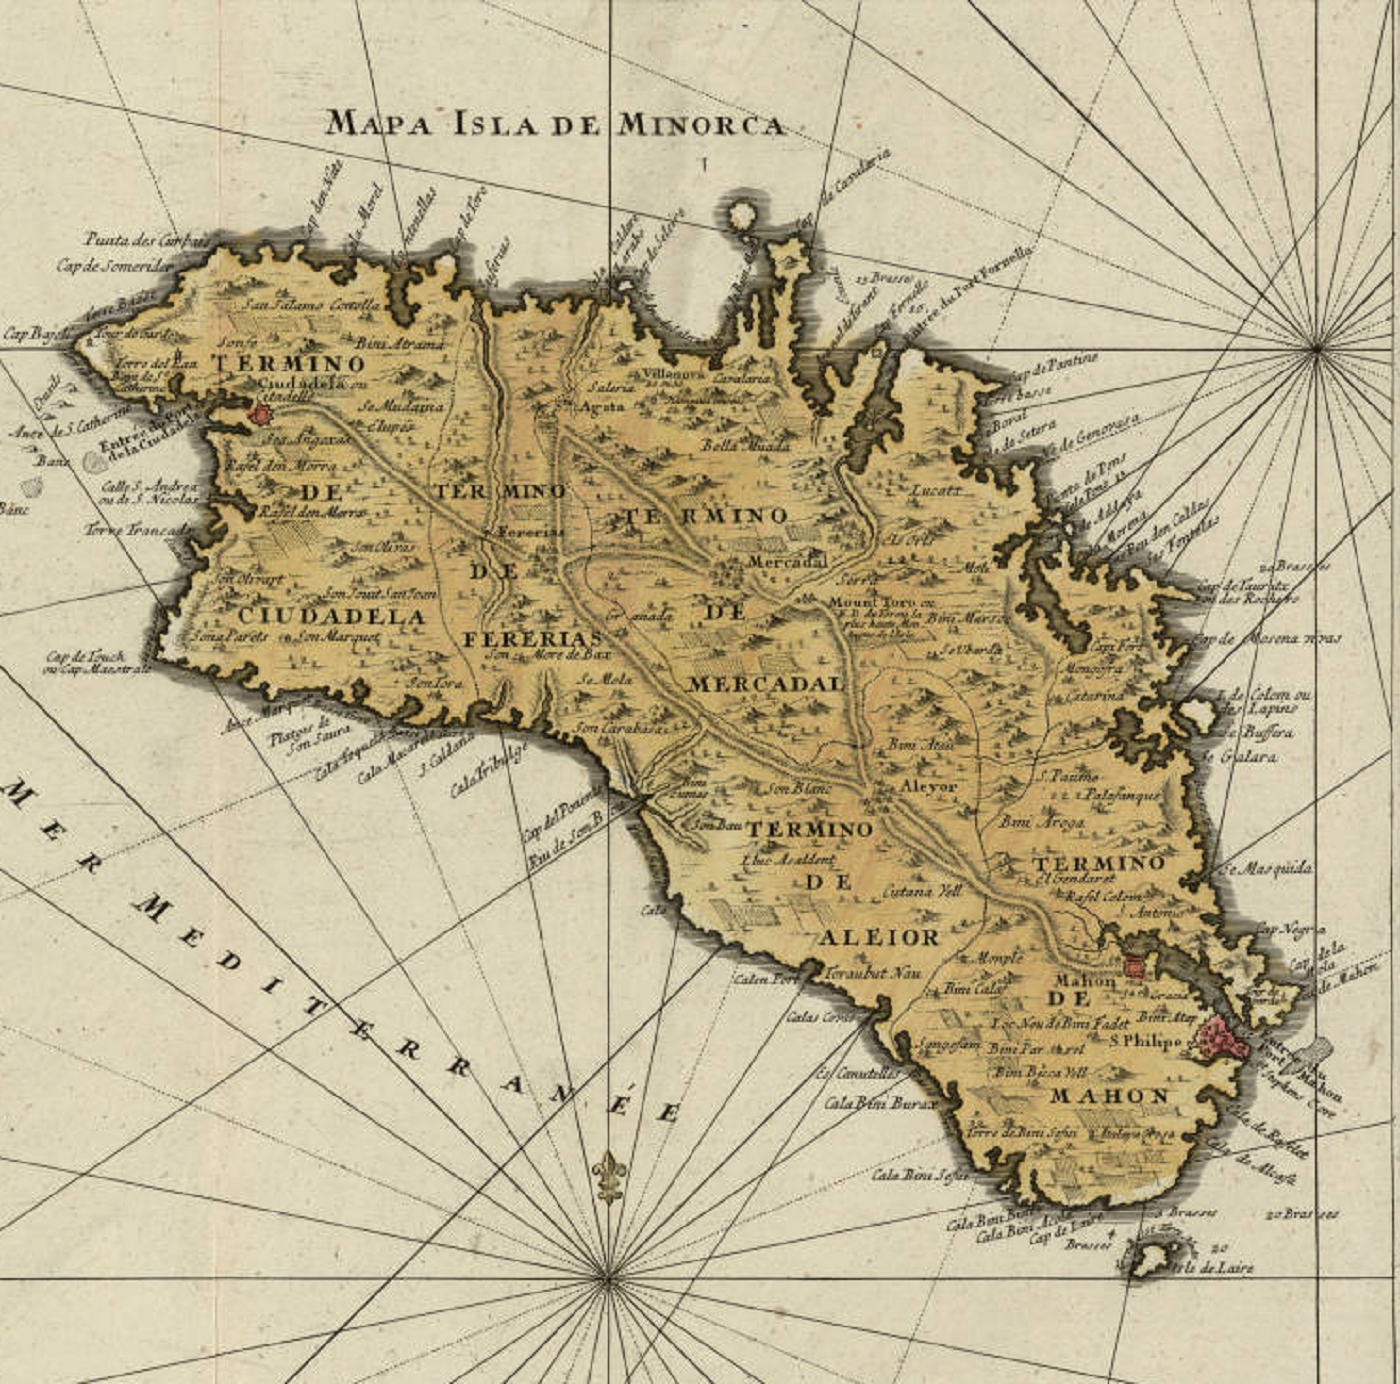 La guerra de la independencia norteamericana se traslada a Menorca